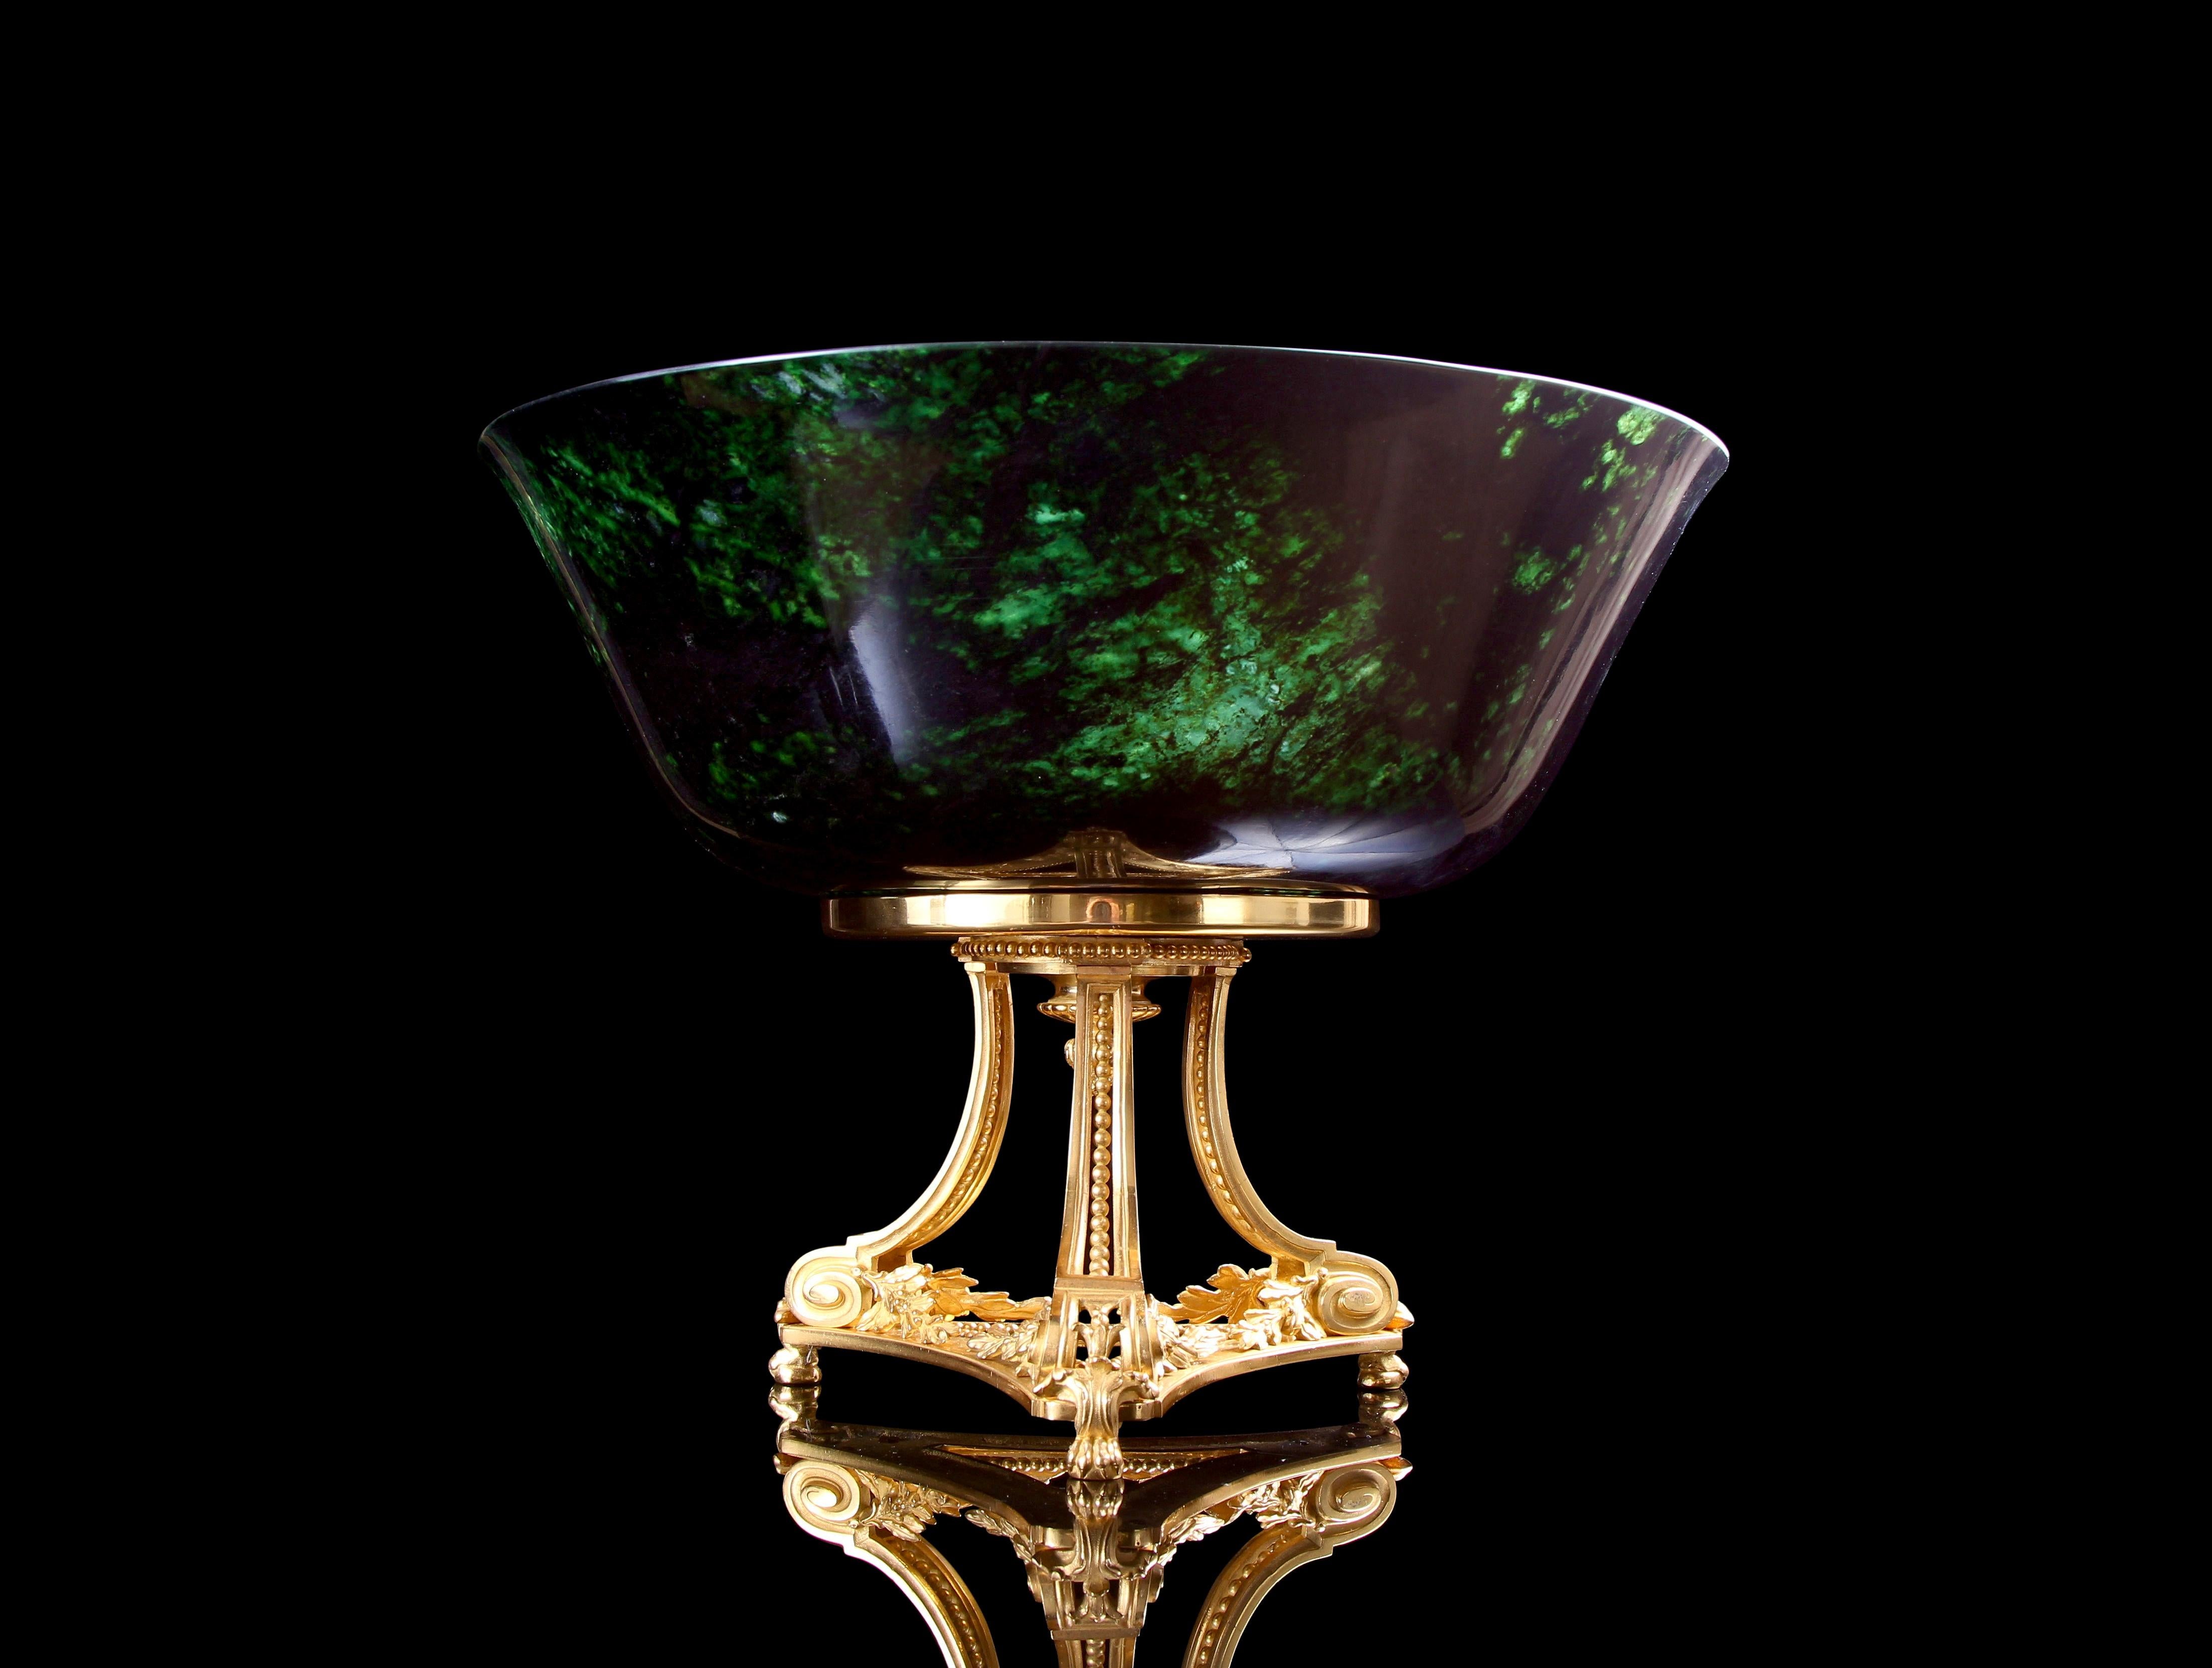 Magnifique bol en jade vert épinard de la fin du XVIIIe siècle de la période Qianlong, sur un support en bronze doré du XIXe siècle, par Henri Picard. La création d'un bol sculptural d'une forme et d'une échelle aussi exceptionnelles, à partir de